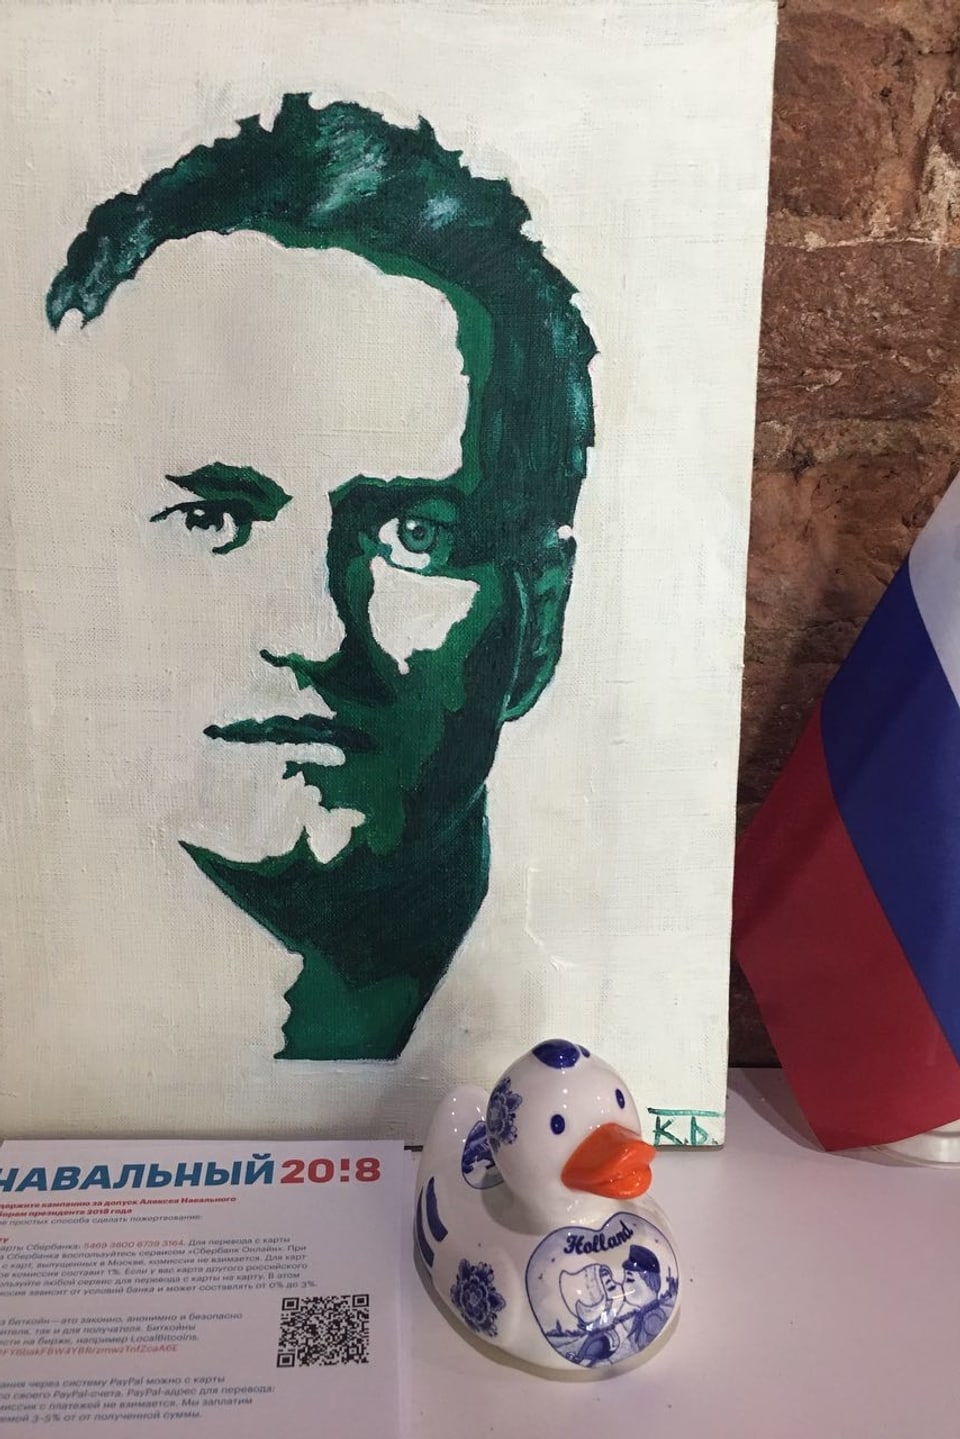 Eine Schablone von Navalny.